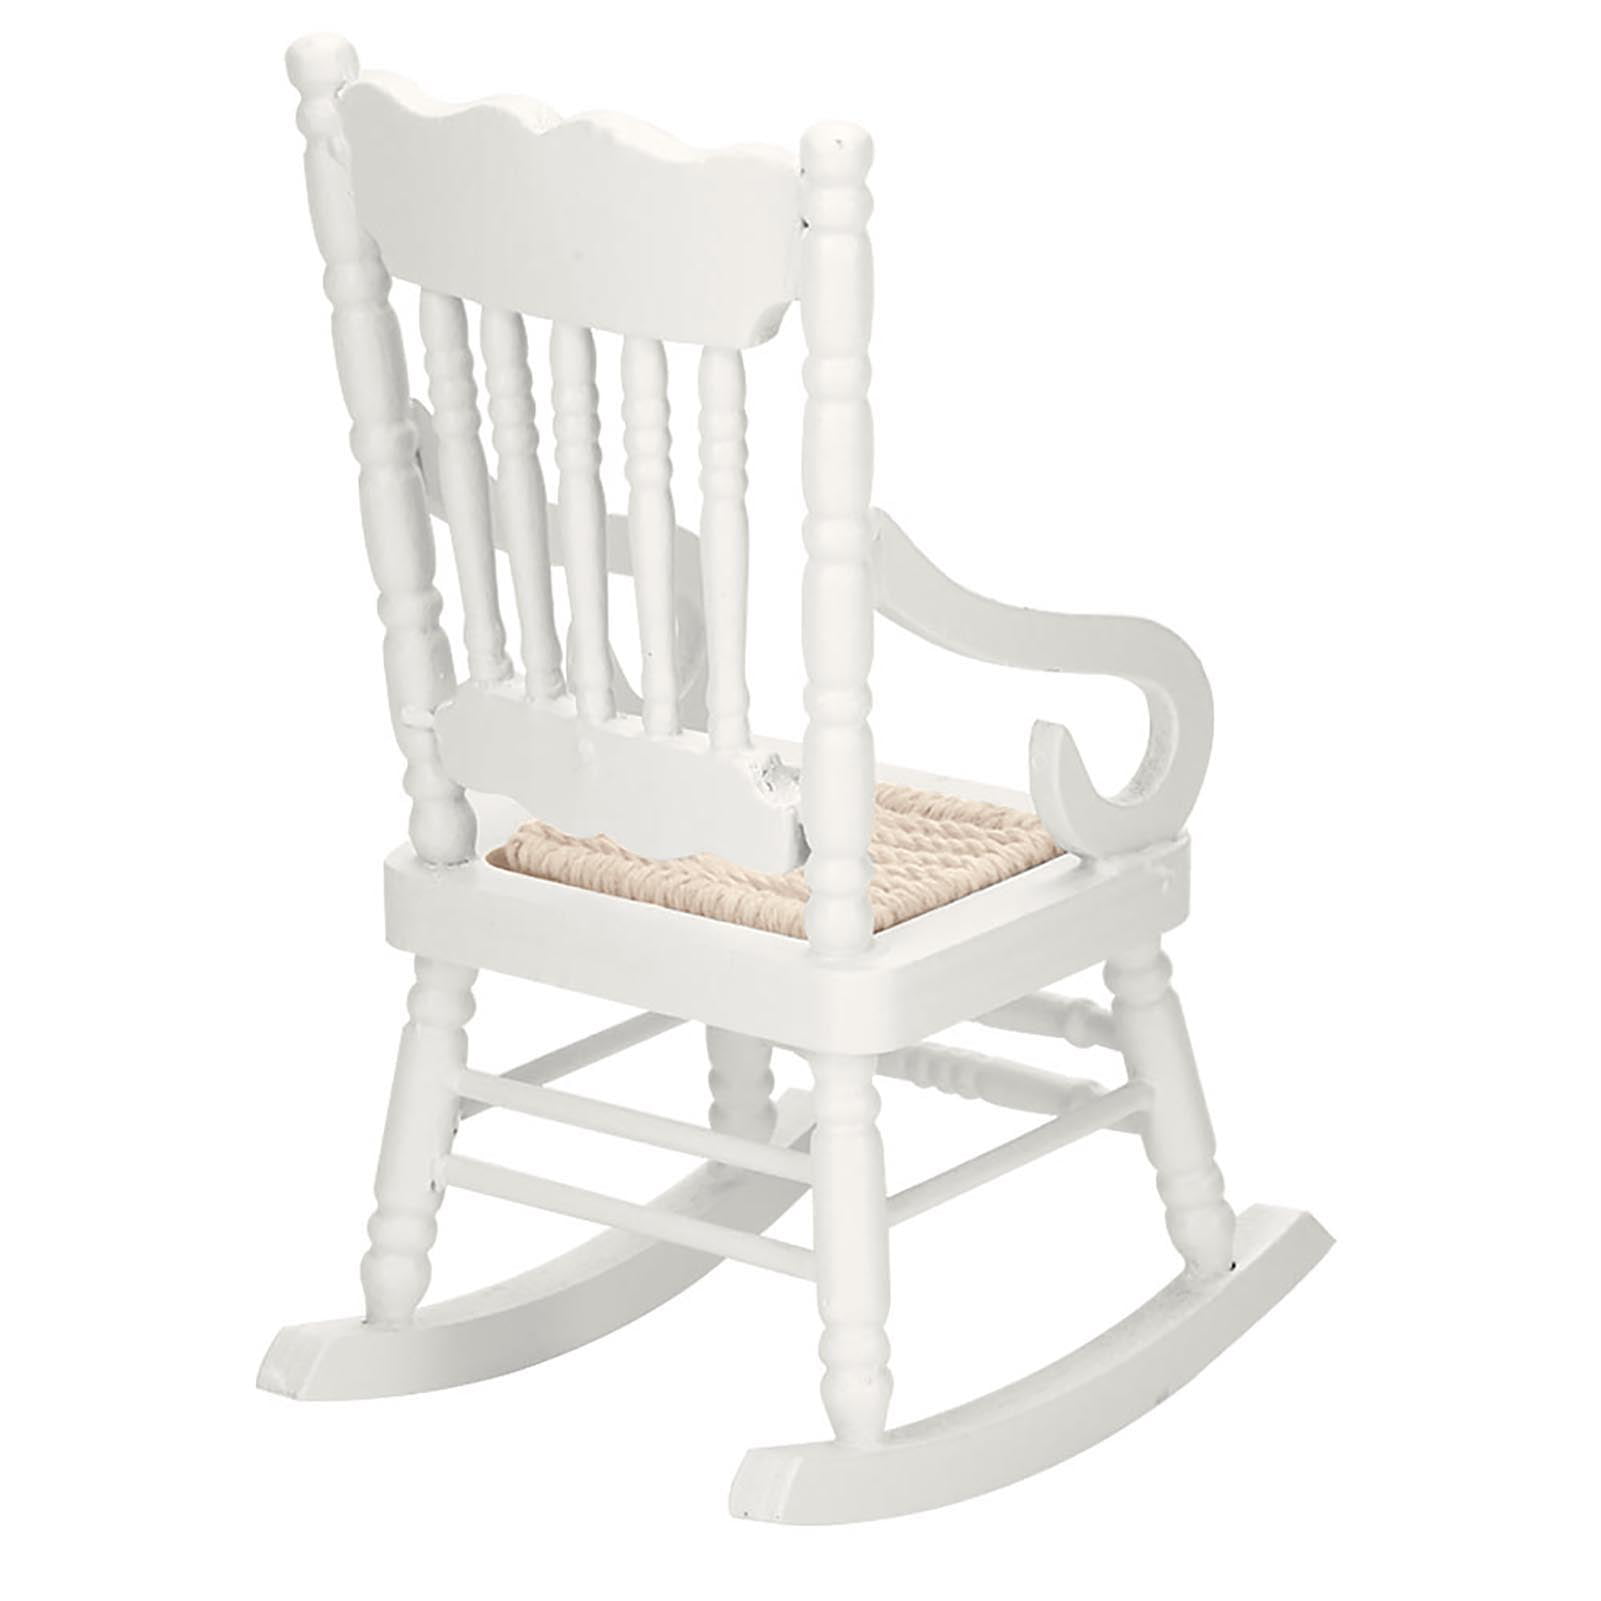 1:12 Dollhouse Miniature Wooden Rocking Chair Furniture AccessoriesVJUS 